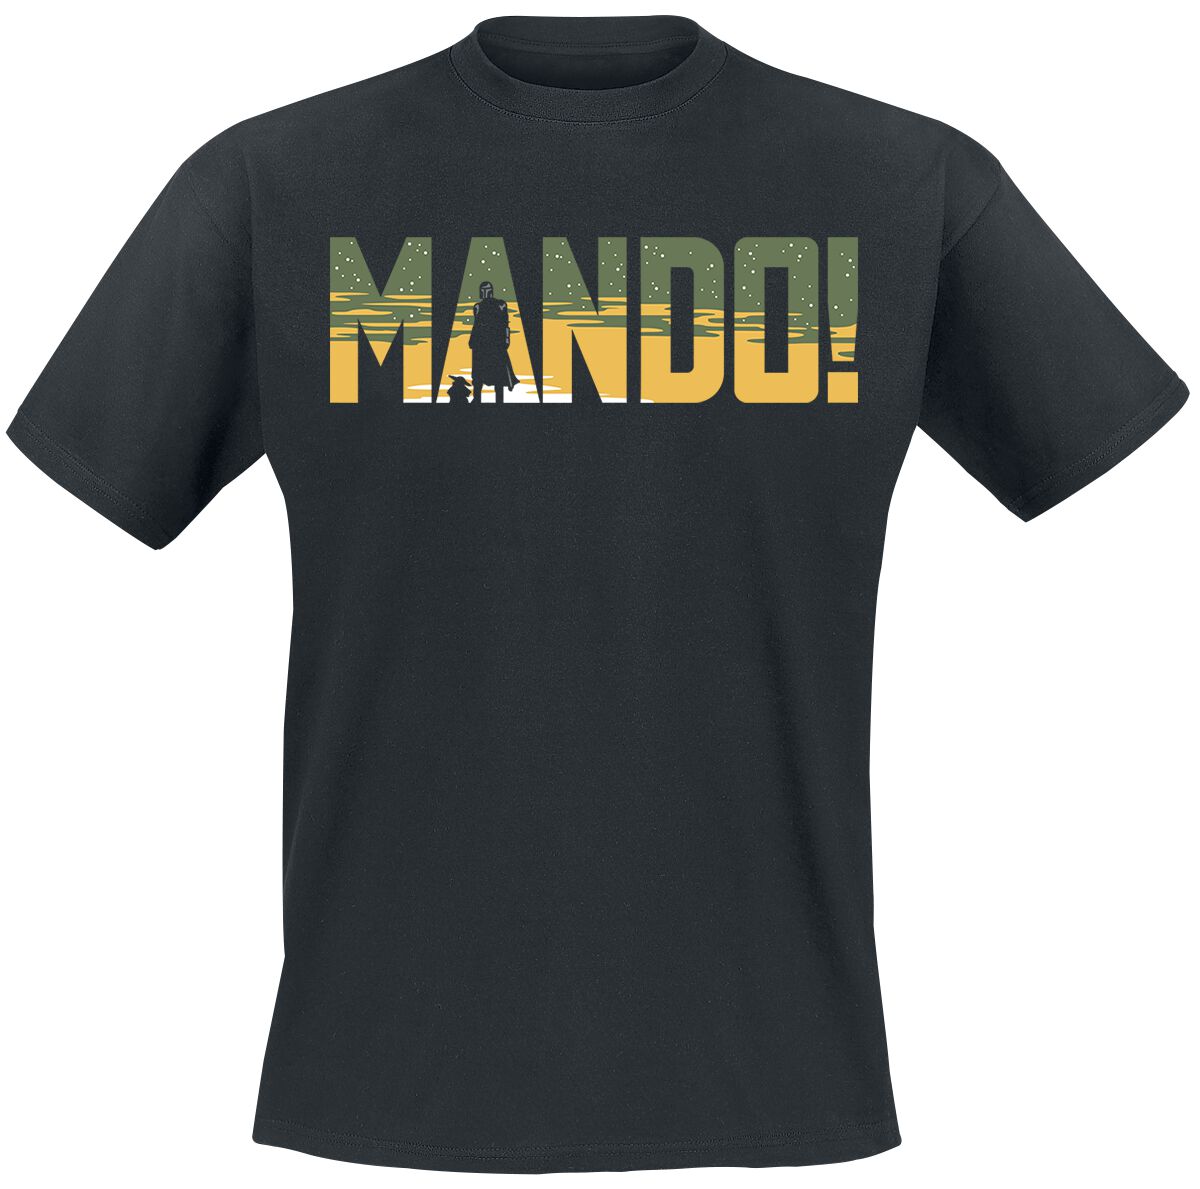 Star Wars T-Shirt - The Mandalorian - Season 3 - Mando - S bis XXL - für Männer - Größe M - schwarz  - EMP exklusives Merchandise!